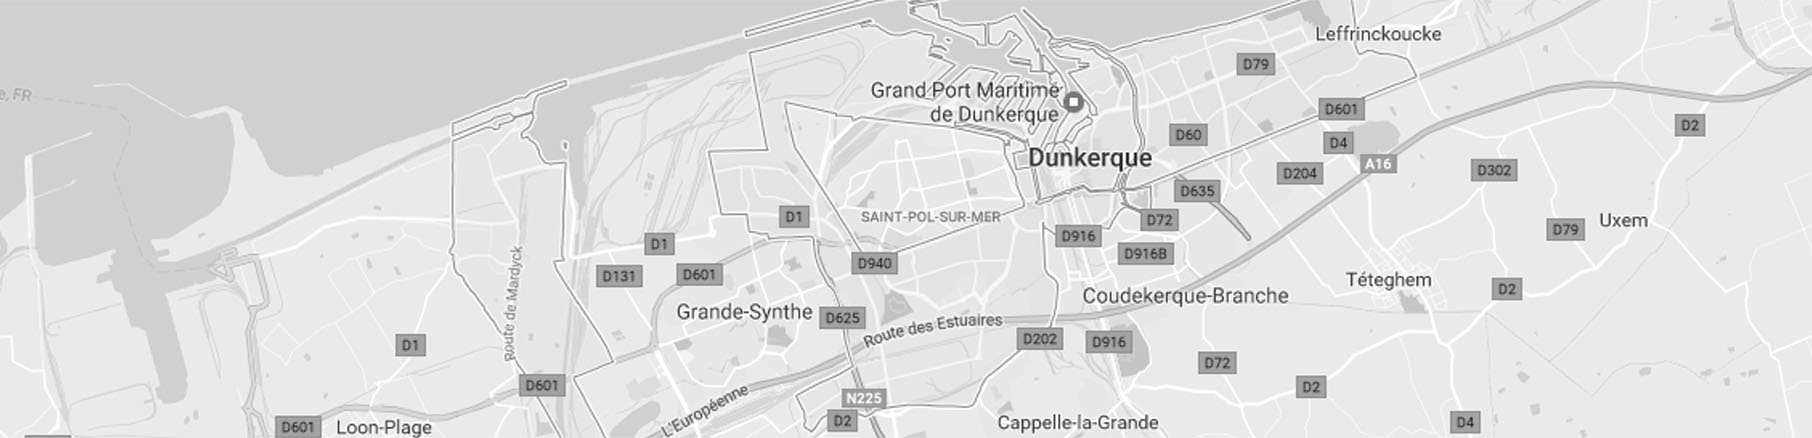 Google map dunkerque Grhyd